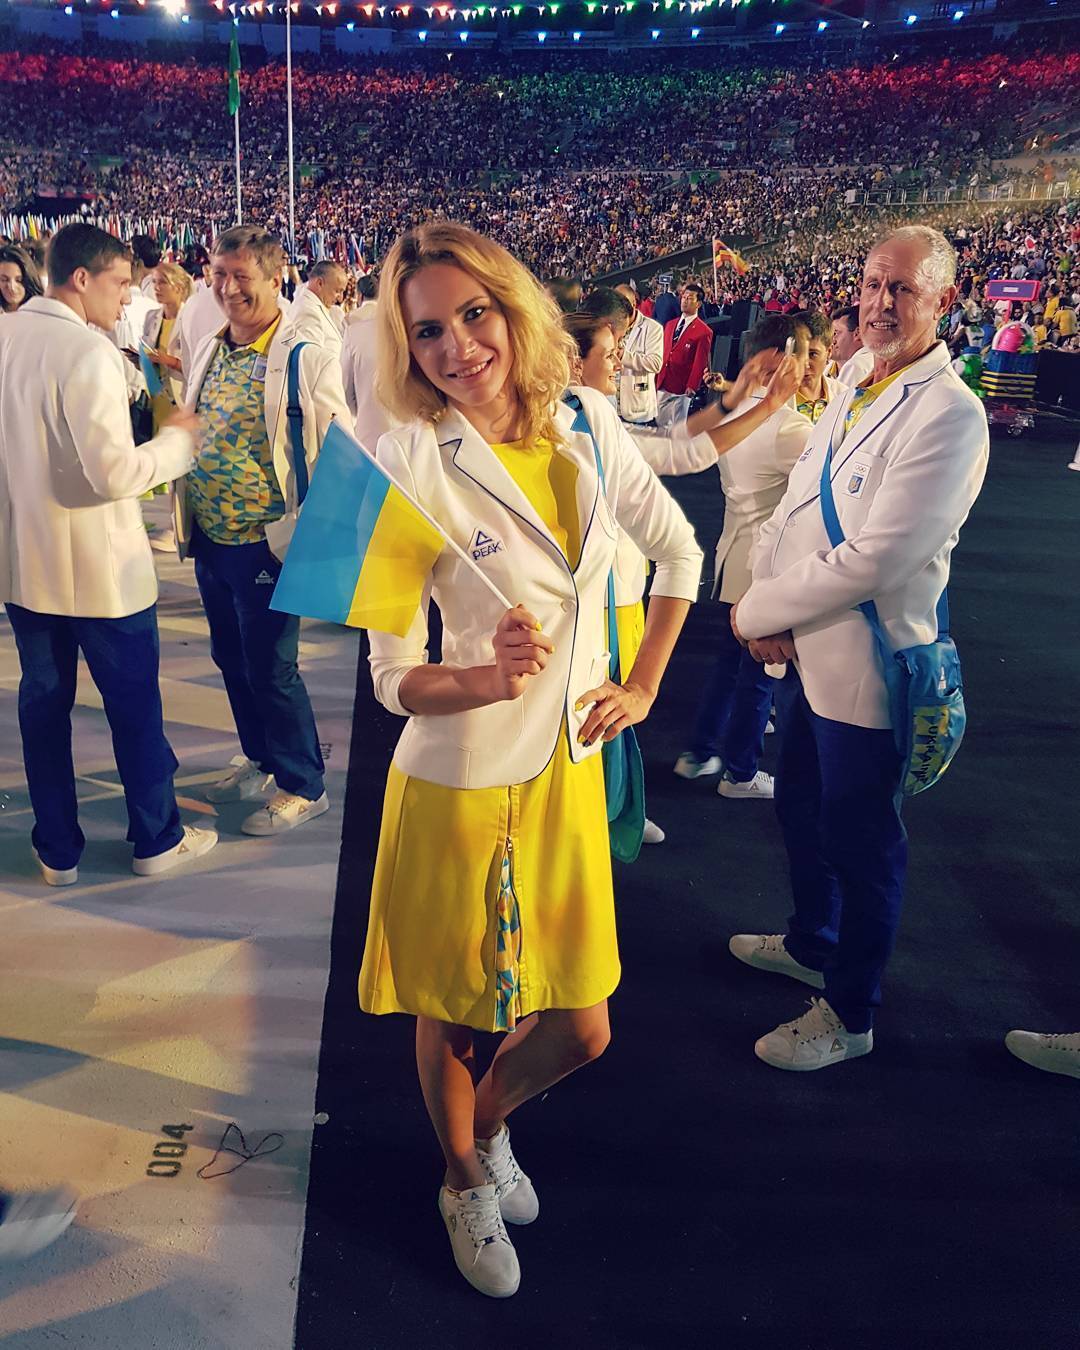 Знаменитая украинская легкоатлетка снялась в купальнике, поразив "суперфигурой"